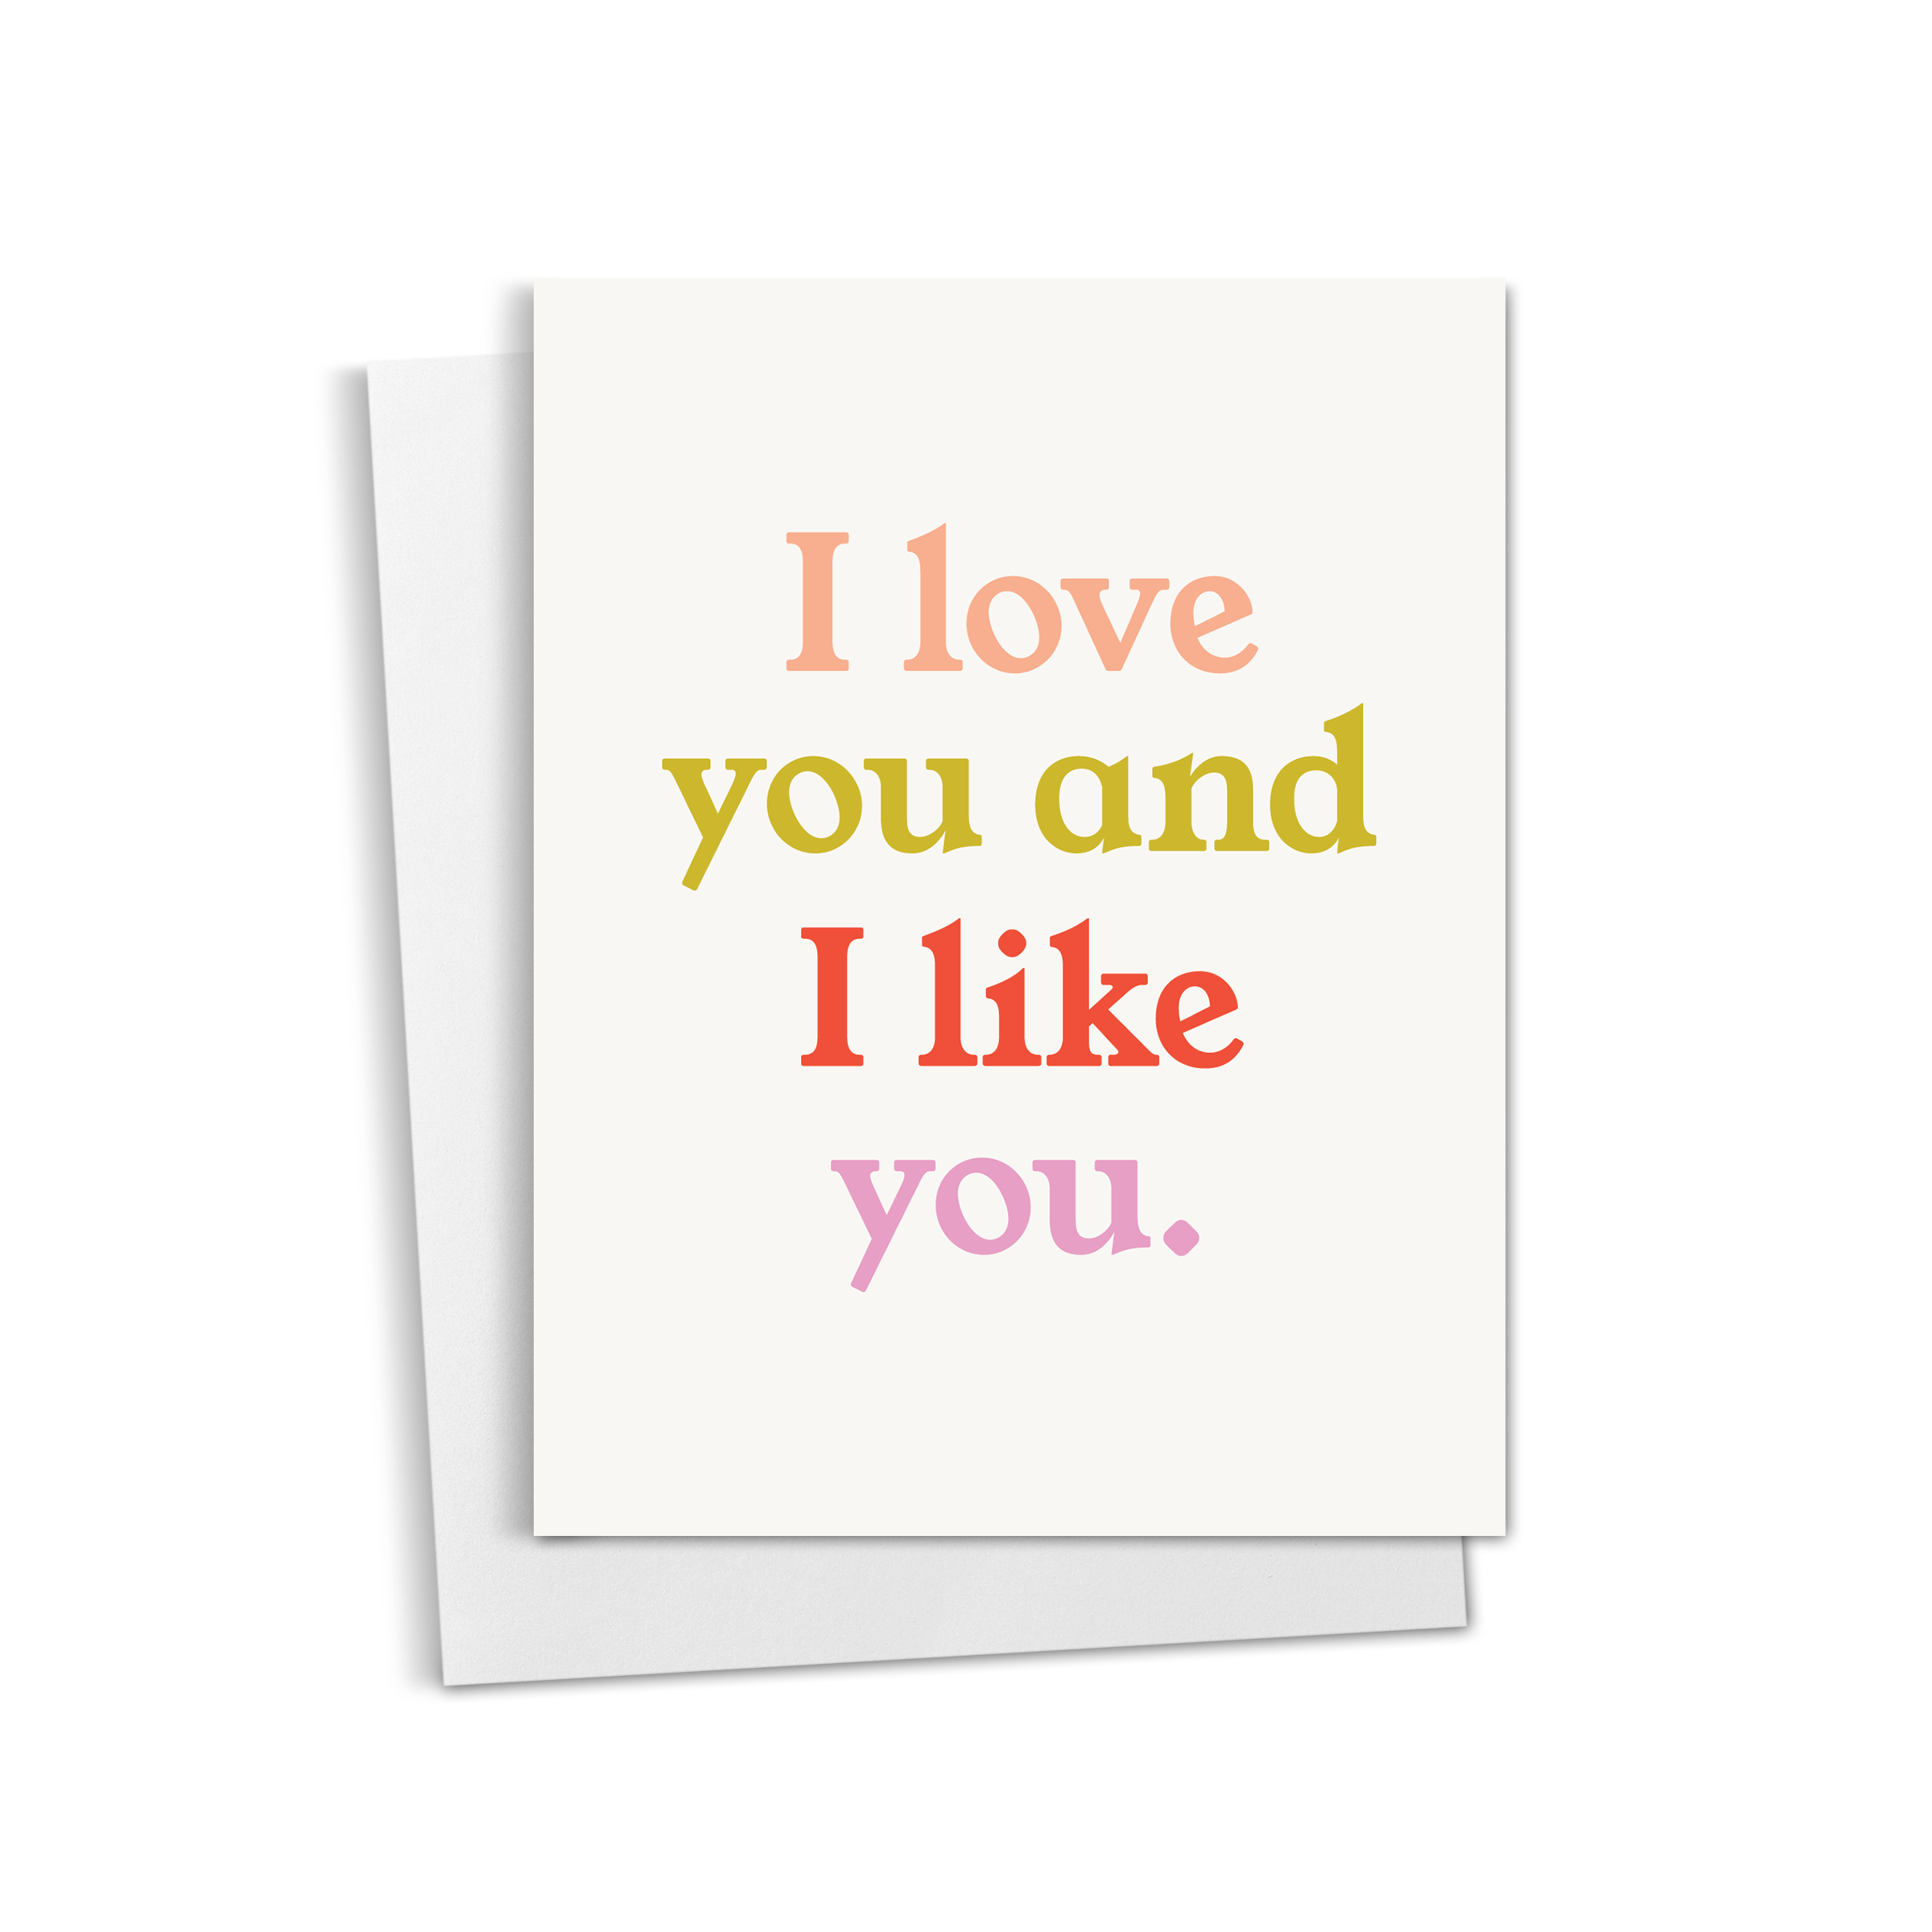 I Love You & I Like You Card